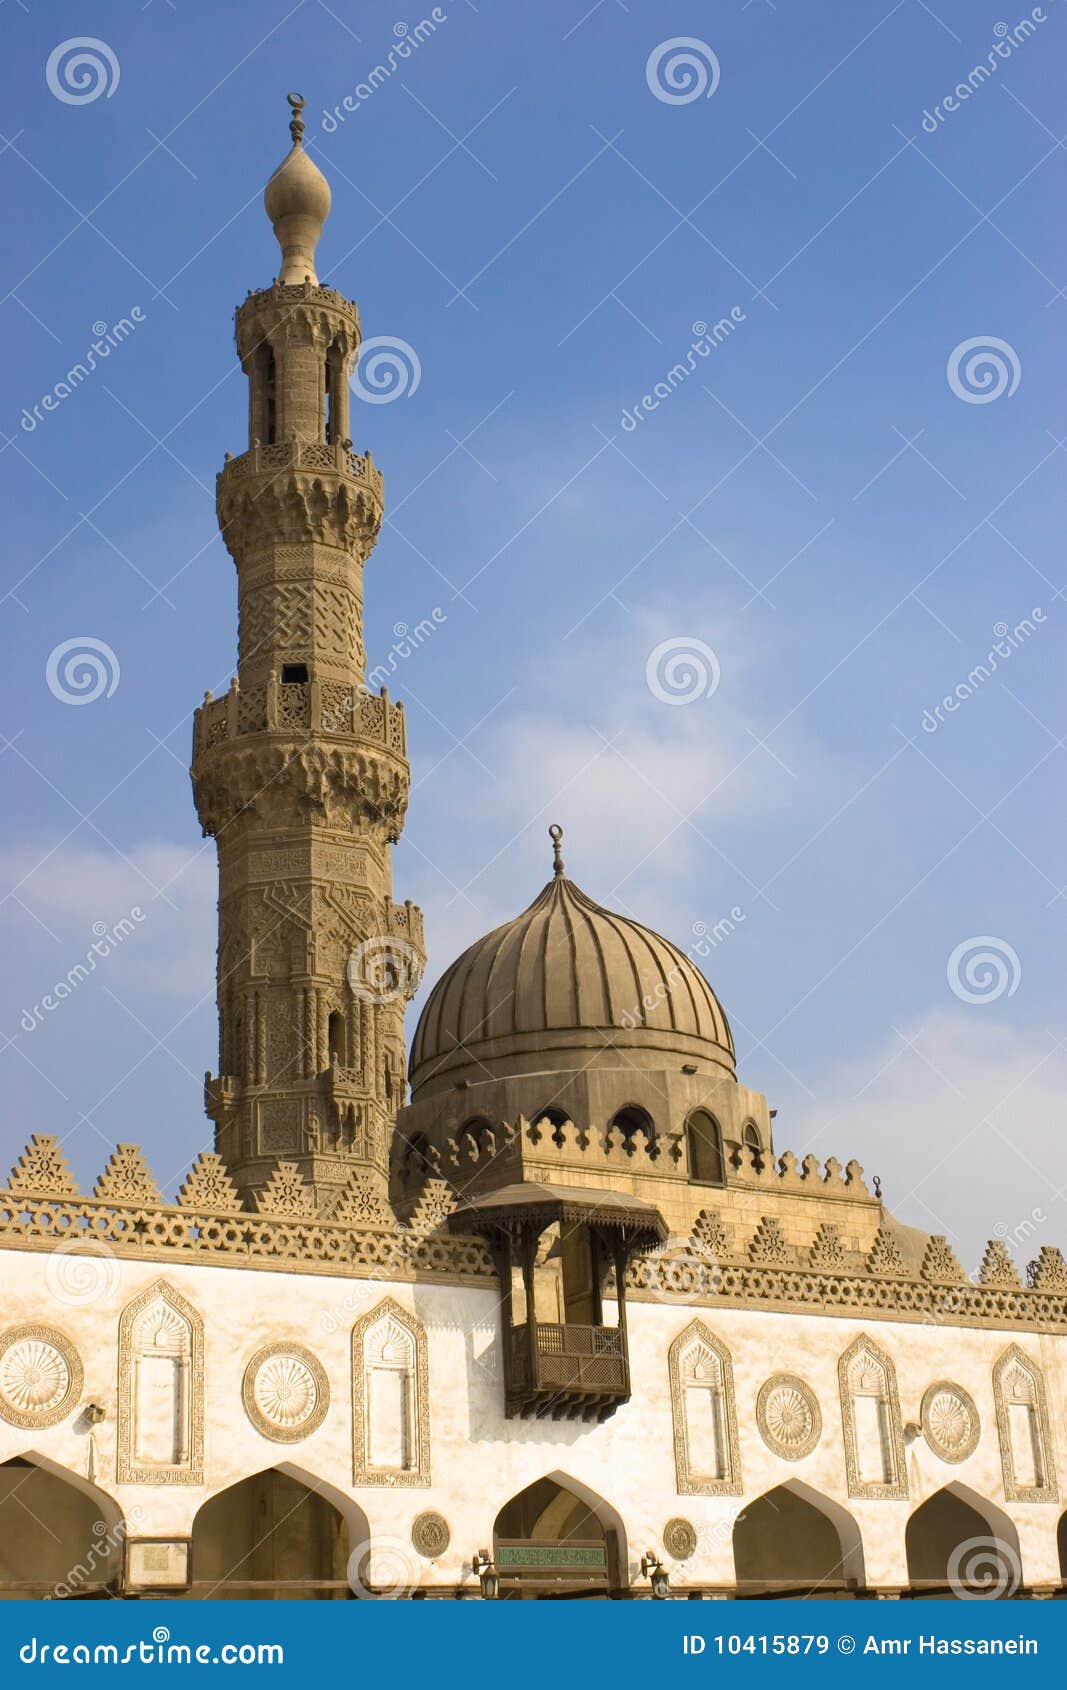 al-azhar mosque